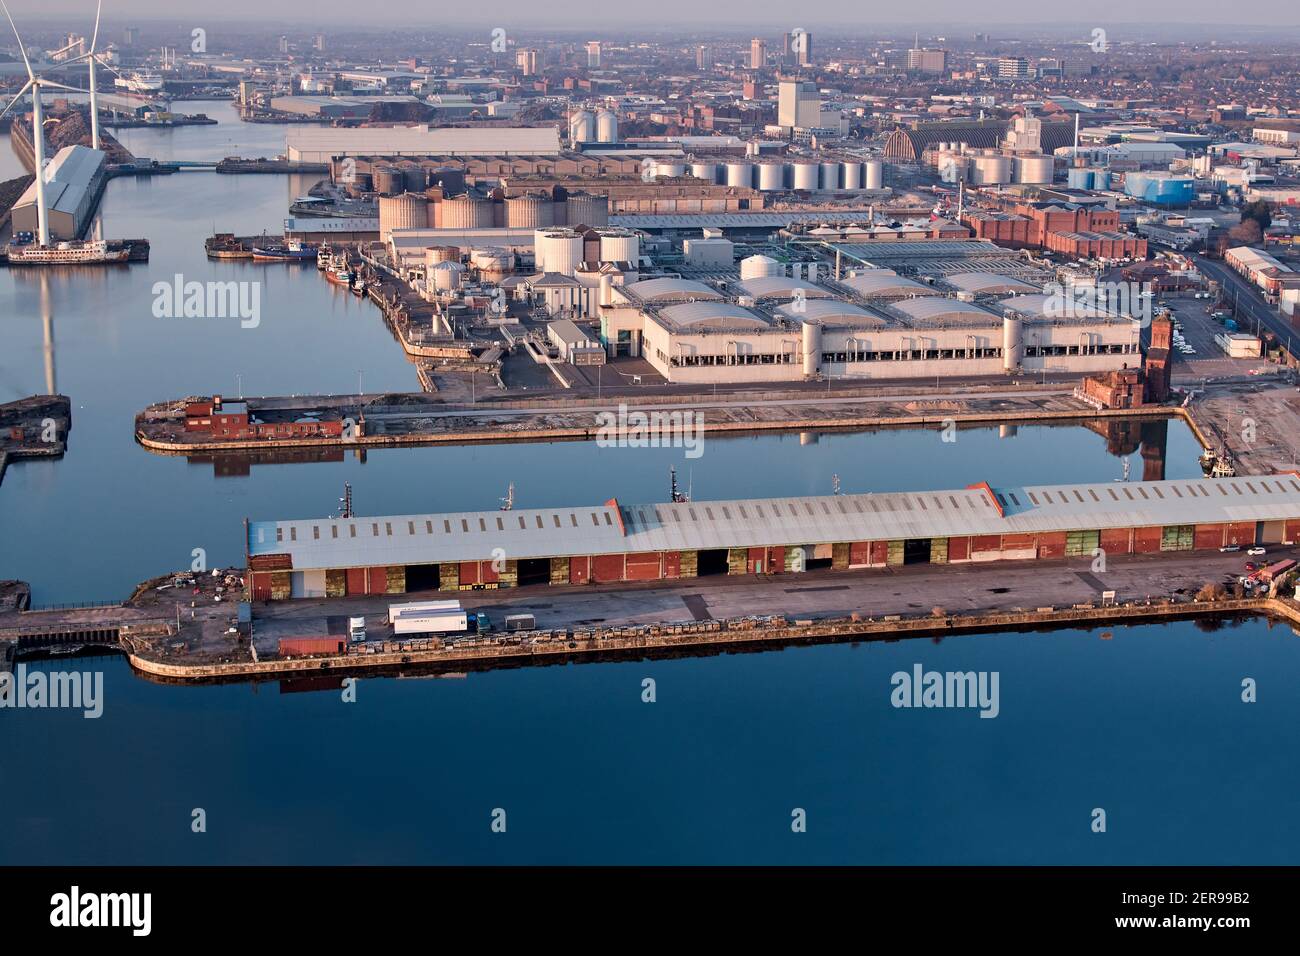 Vistas aéreas de Bramley Moore Dock, Liverpool. Los planes del Everton FC para un nuevo estadio de 52,000 plazas han sido aprobados por los concejales de la ciudad de Liverpool. Foto de stock